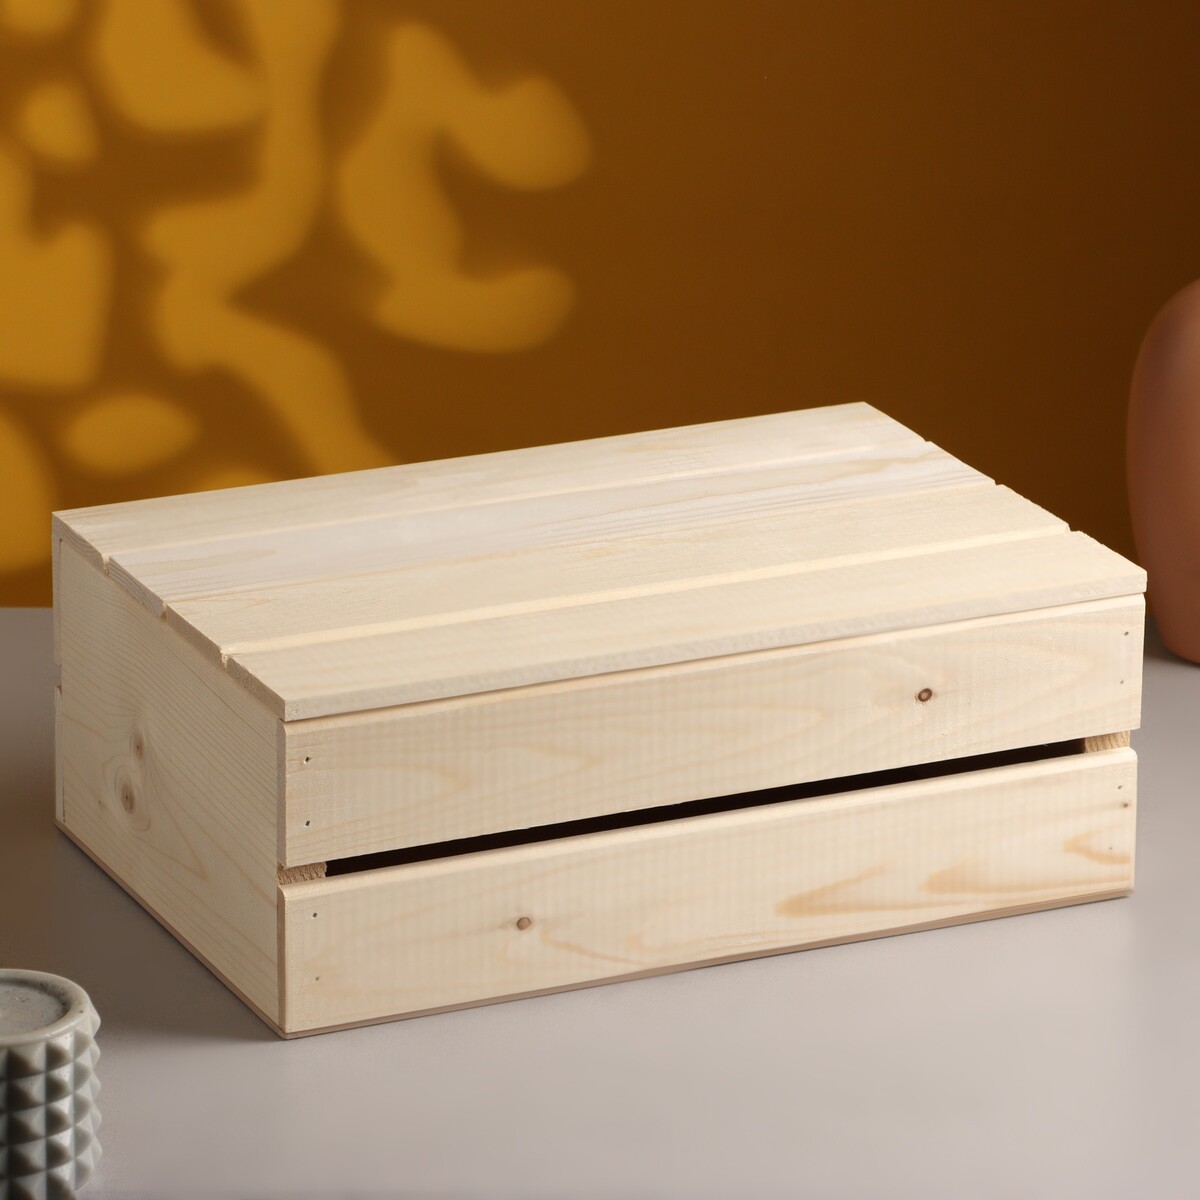 Ящик деревянный 35×23×13 см подарочный с реечной крышкой полимербыт ящик артлайн с крышкой 30 л